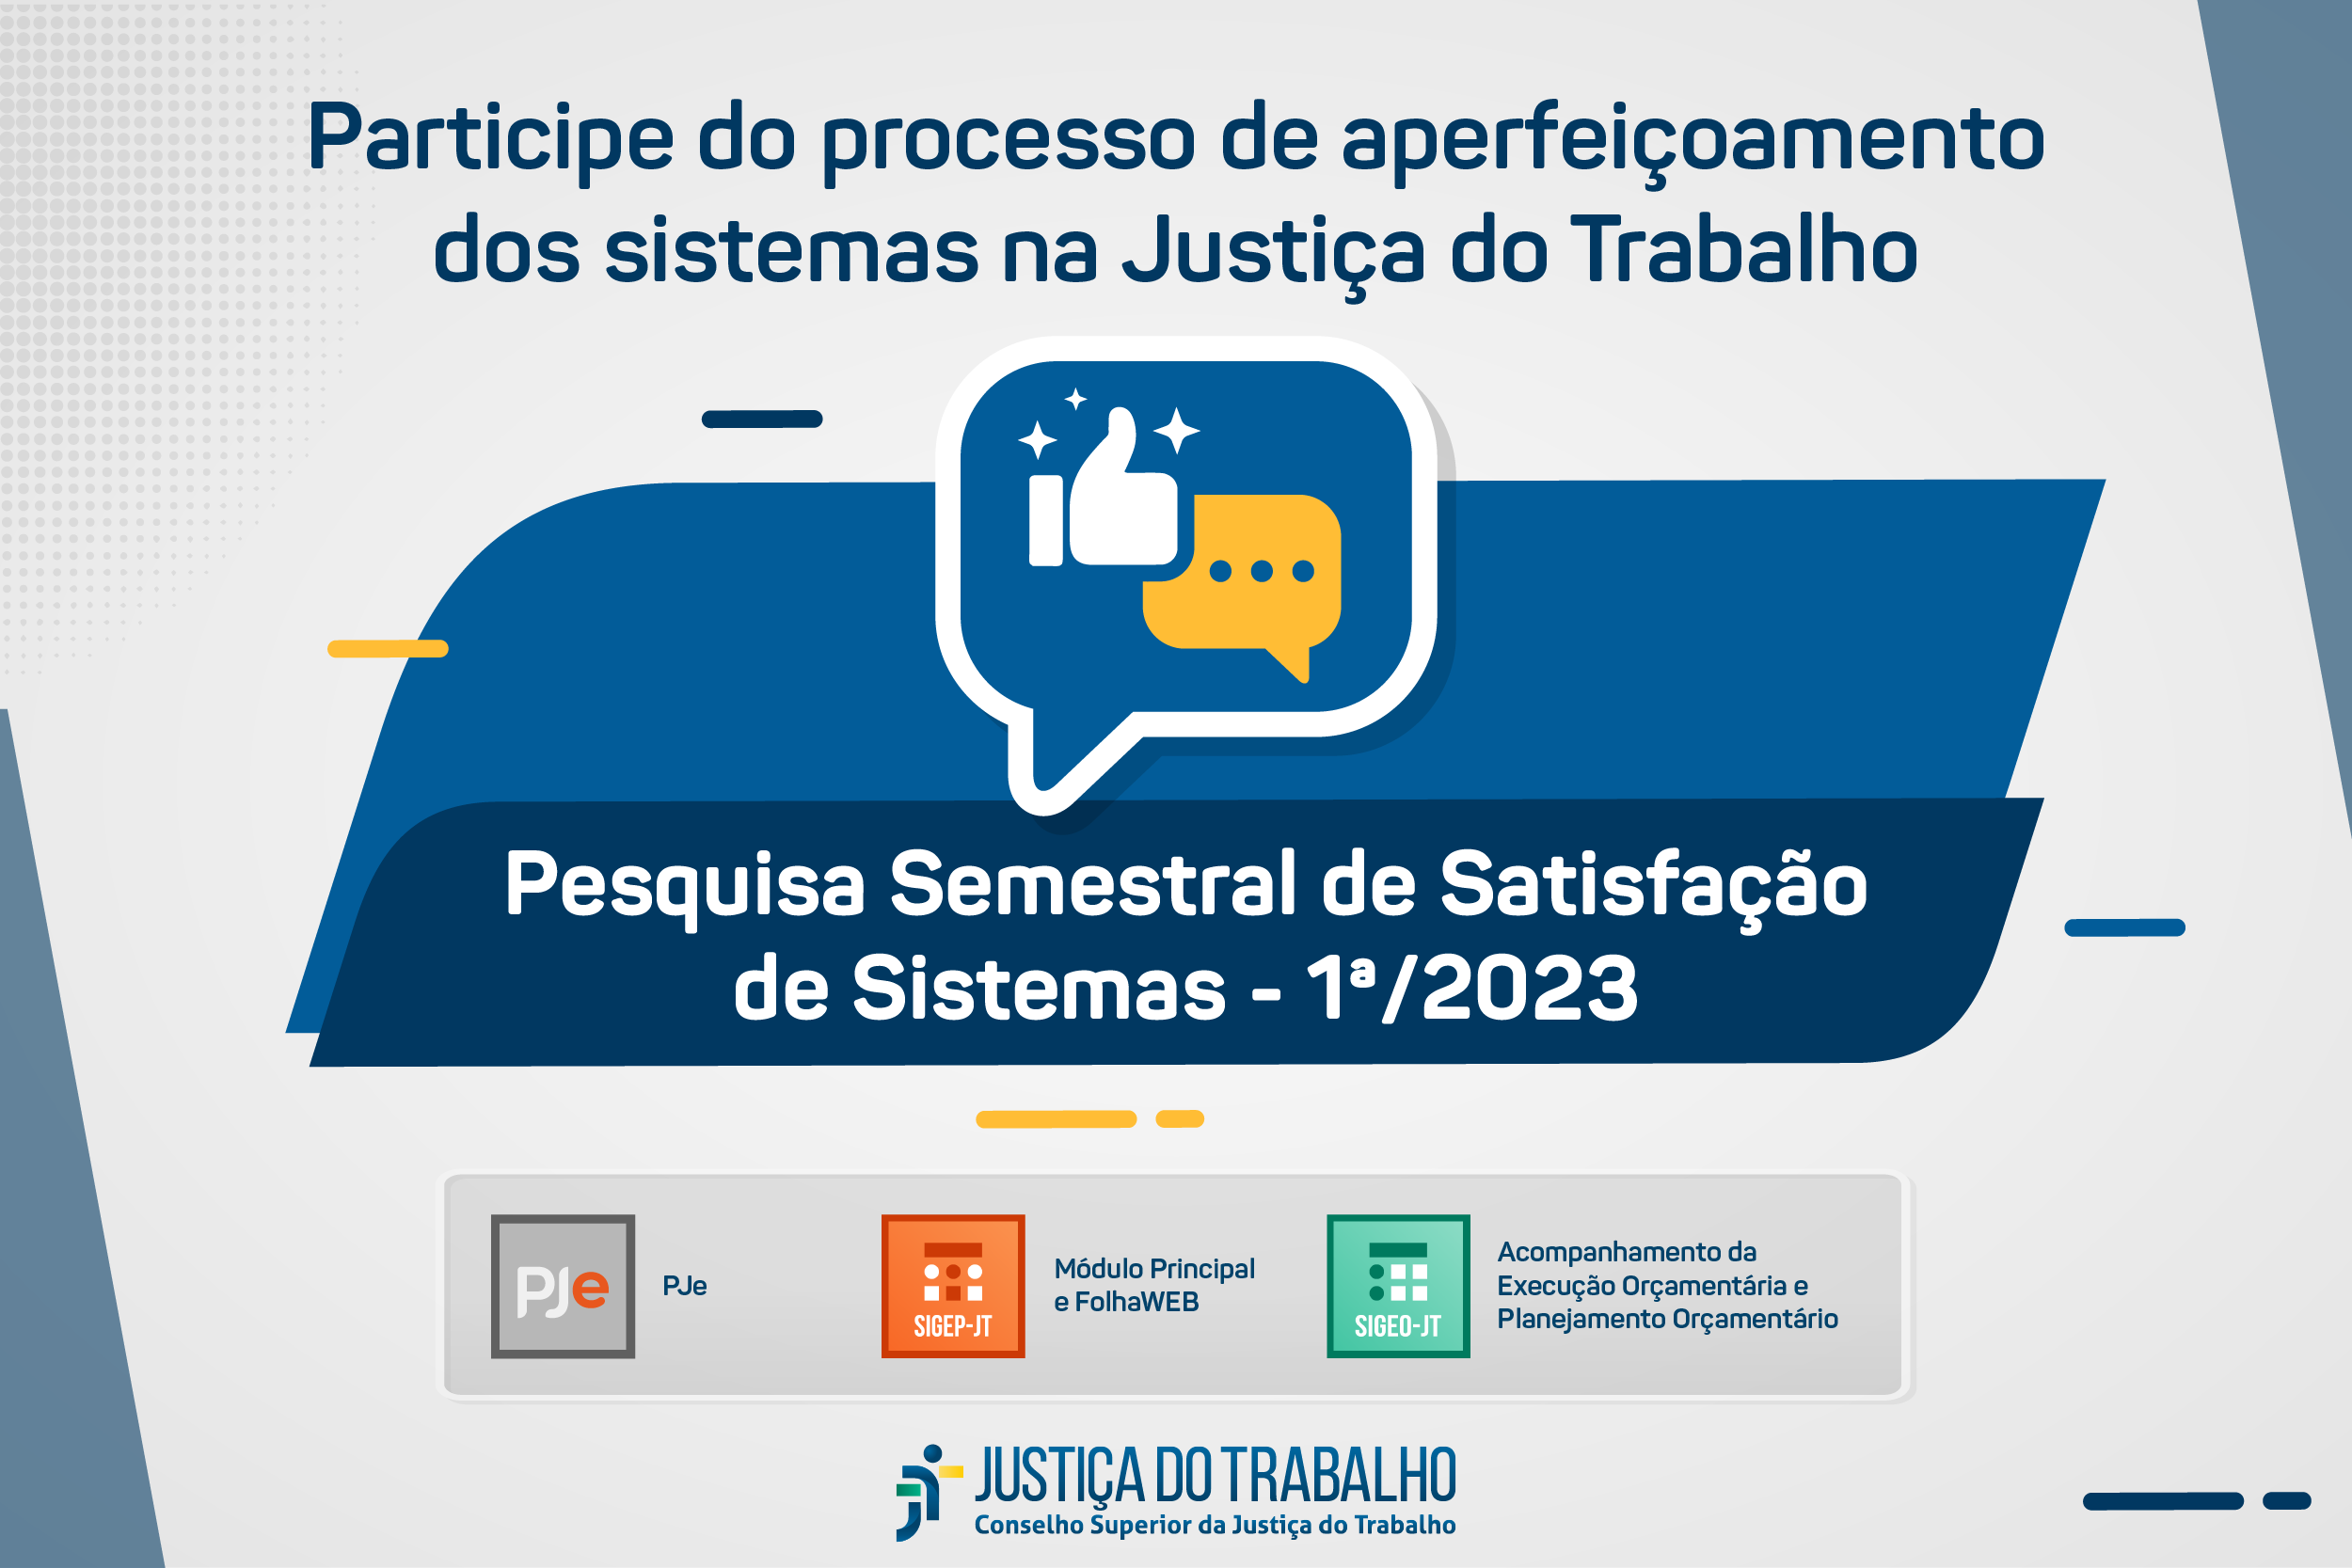 Pesquisa de satisfação: avalie os sistemas jurídicos e administrativos da Justiça do Trabalho